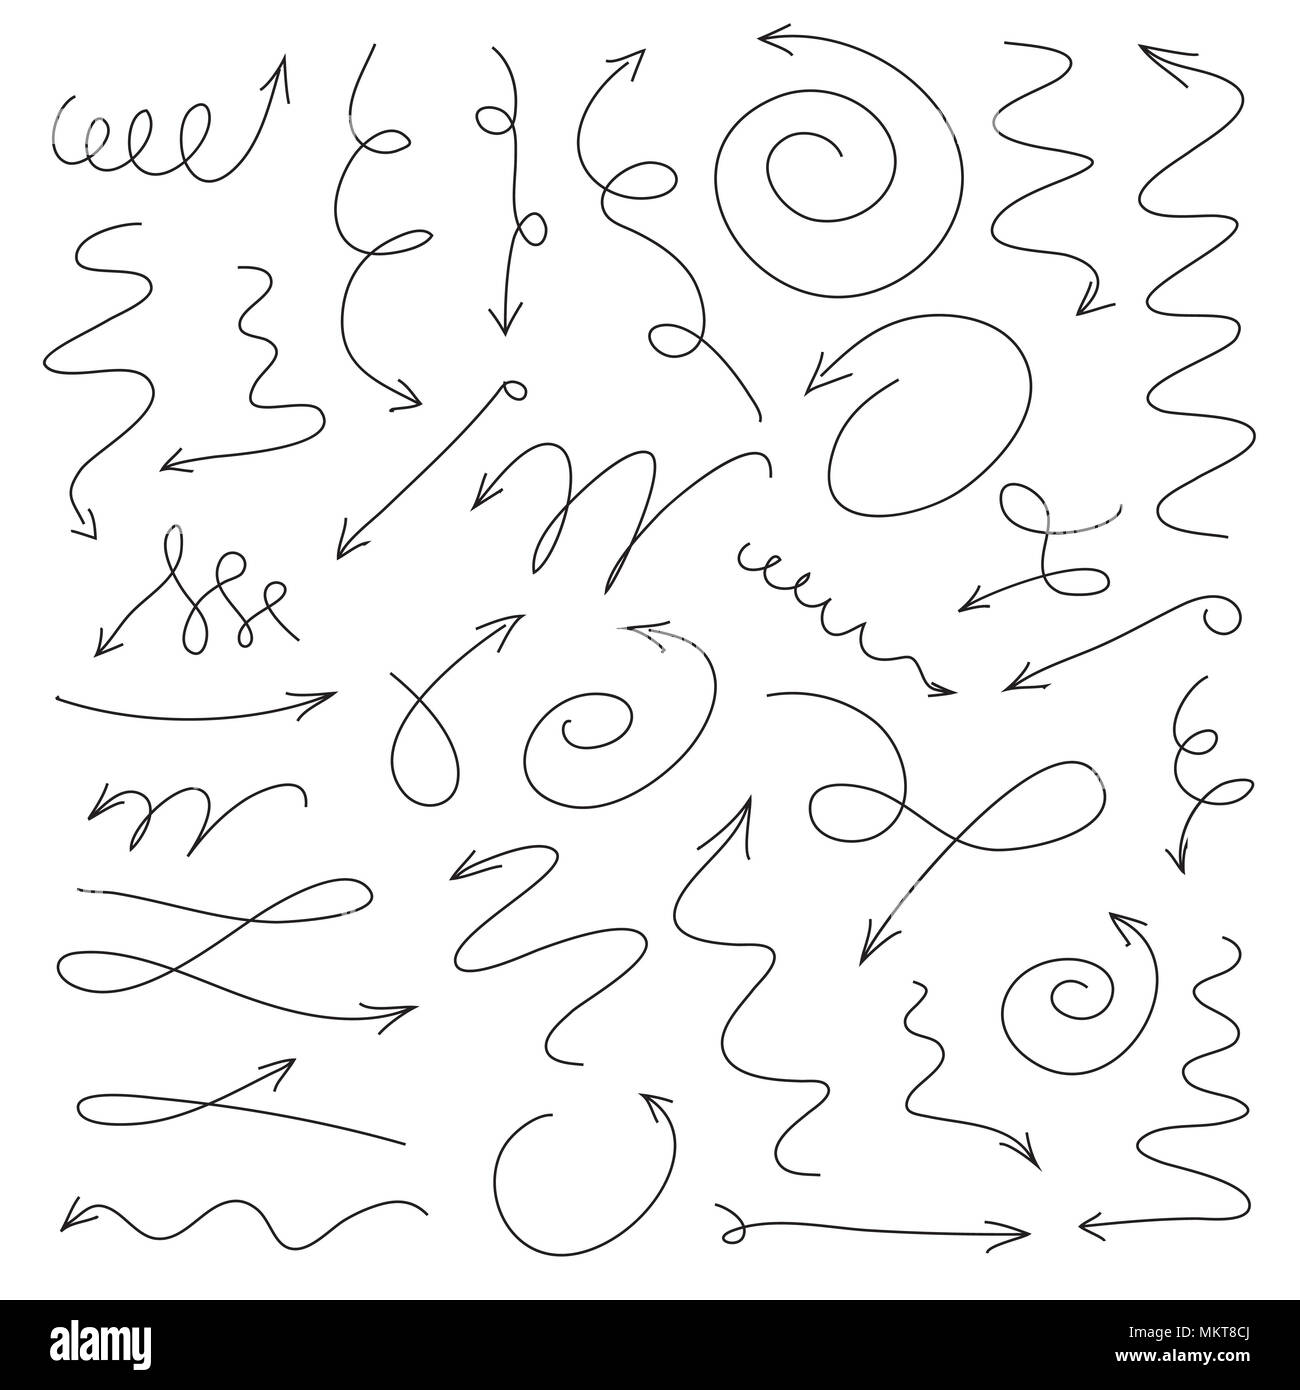 Grau Satz Pfeile Zeichnen mit Pen. Vector Illustration. Sammlung von Ikonen. Stockfoto